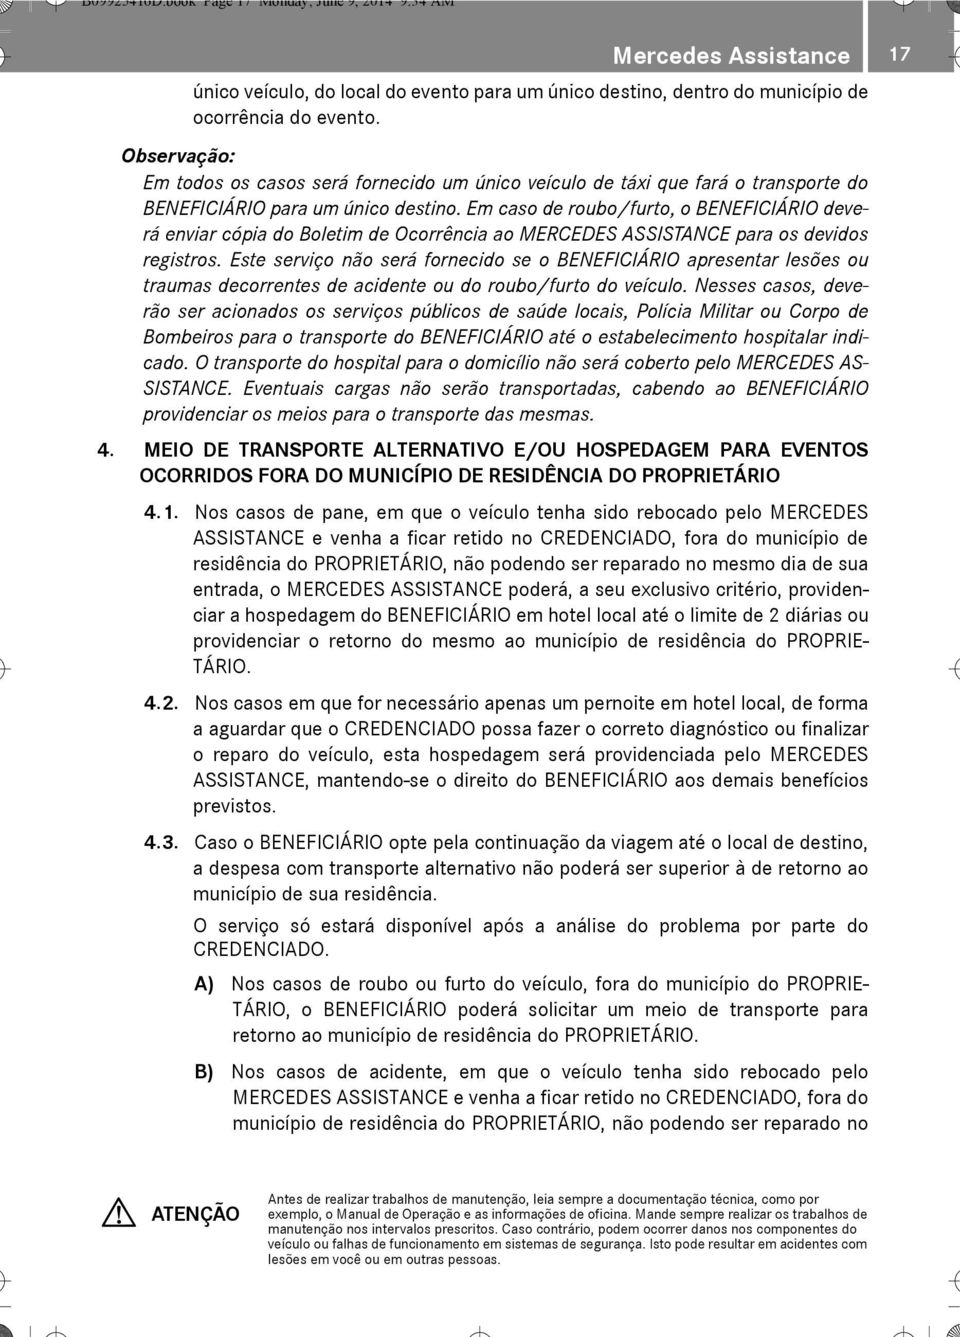 Em caso de roubo/furto, o BENEFICIÁRIO deverá enviar cópia do Boletim de Ocorrência ao MERCEDES ASSISTANCE para os devidos registros.